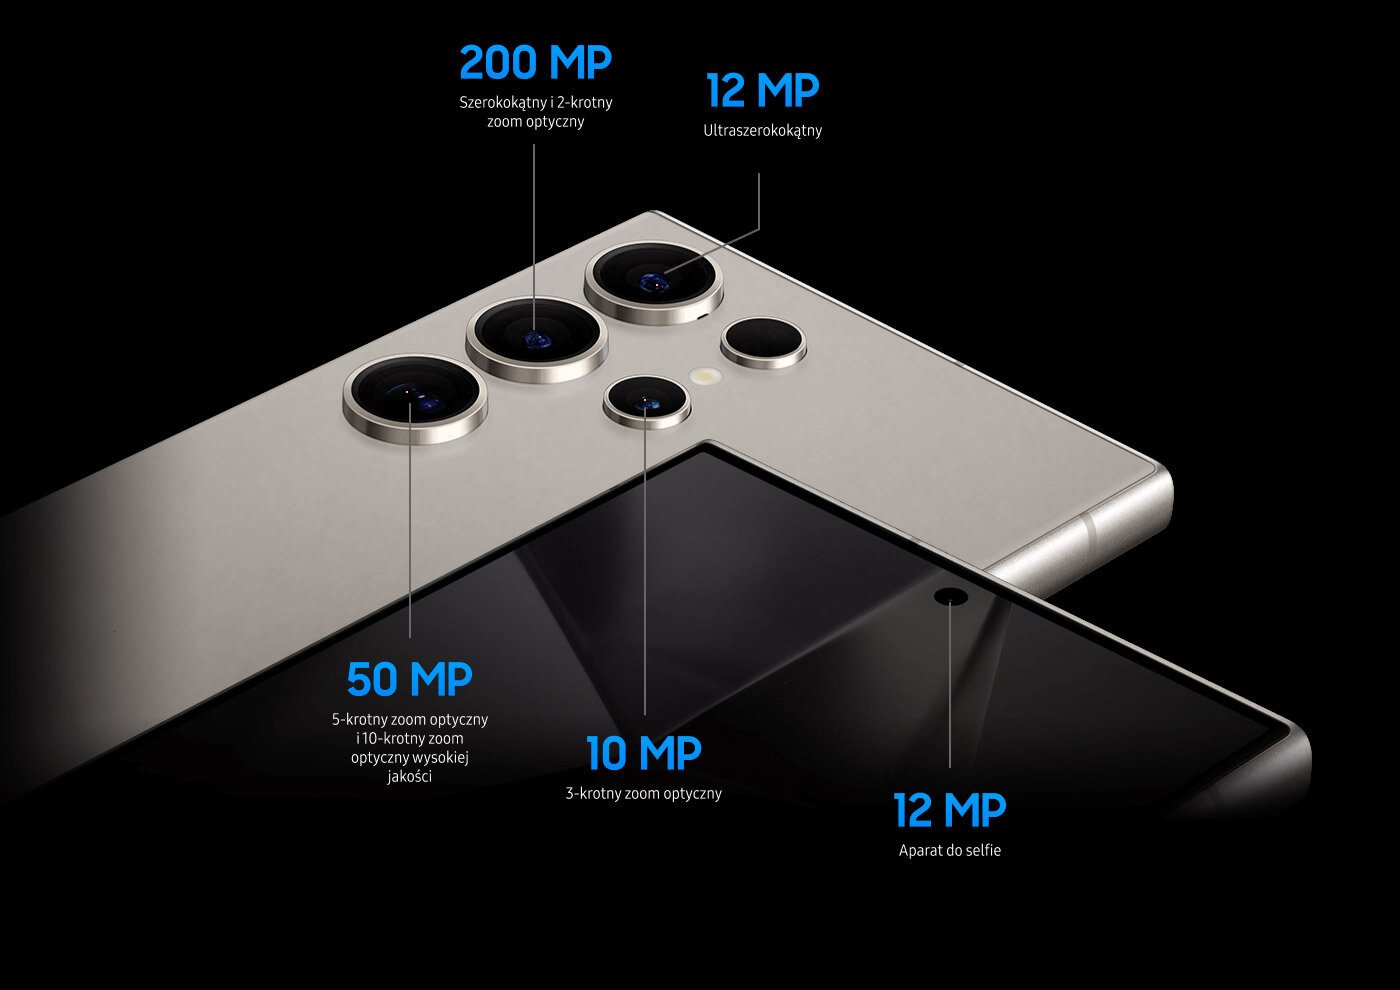  Samsung Galaxy S24 ultra posiada aparaty: 200 MP główny, 12 MP ultraszerokokątny, 50 MP z zoomem optycznym, 10 MP z zoomem optycznym oraz 12 MP do selfie